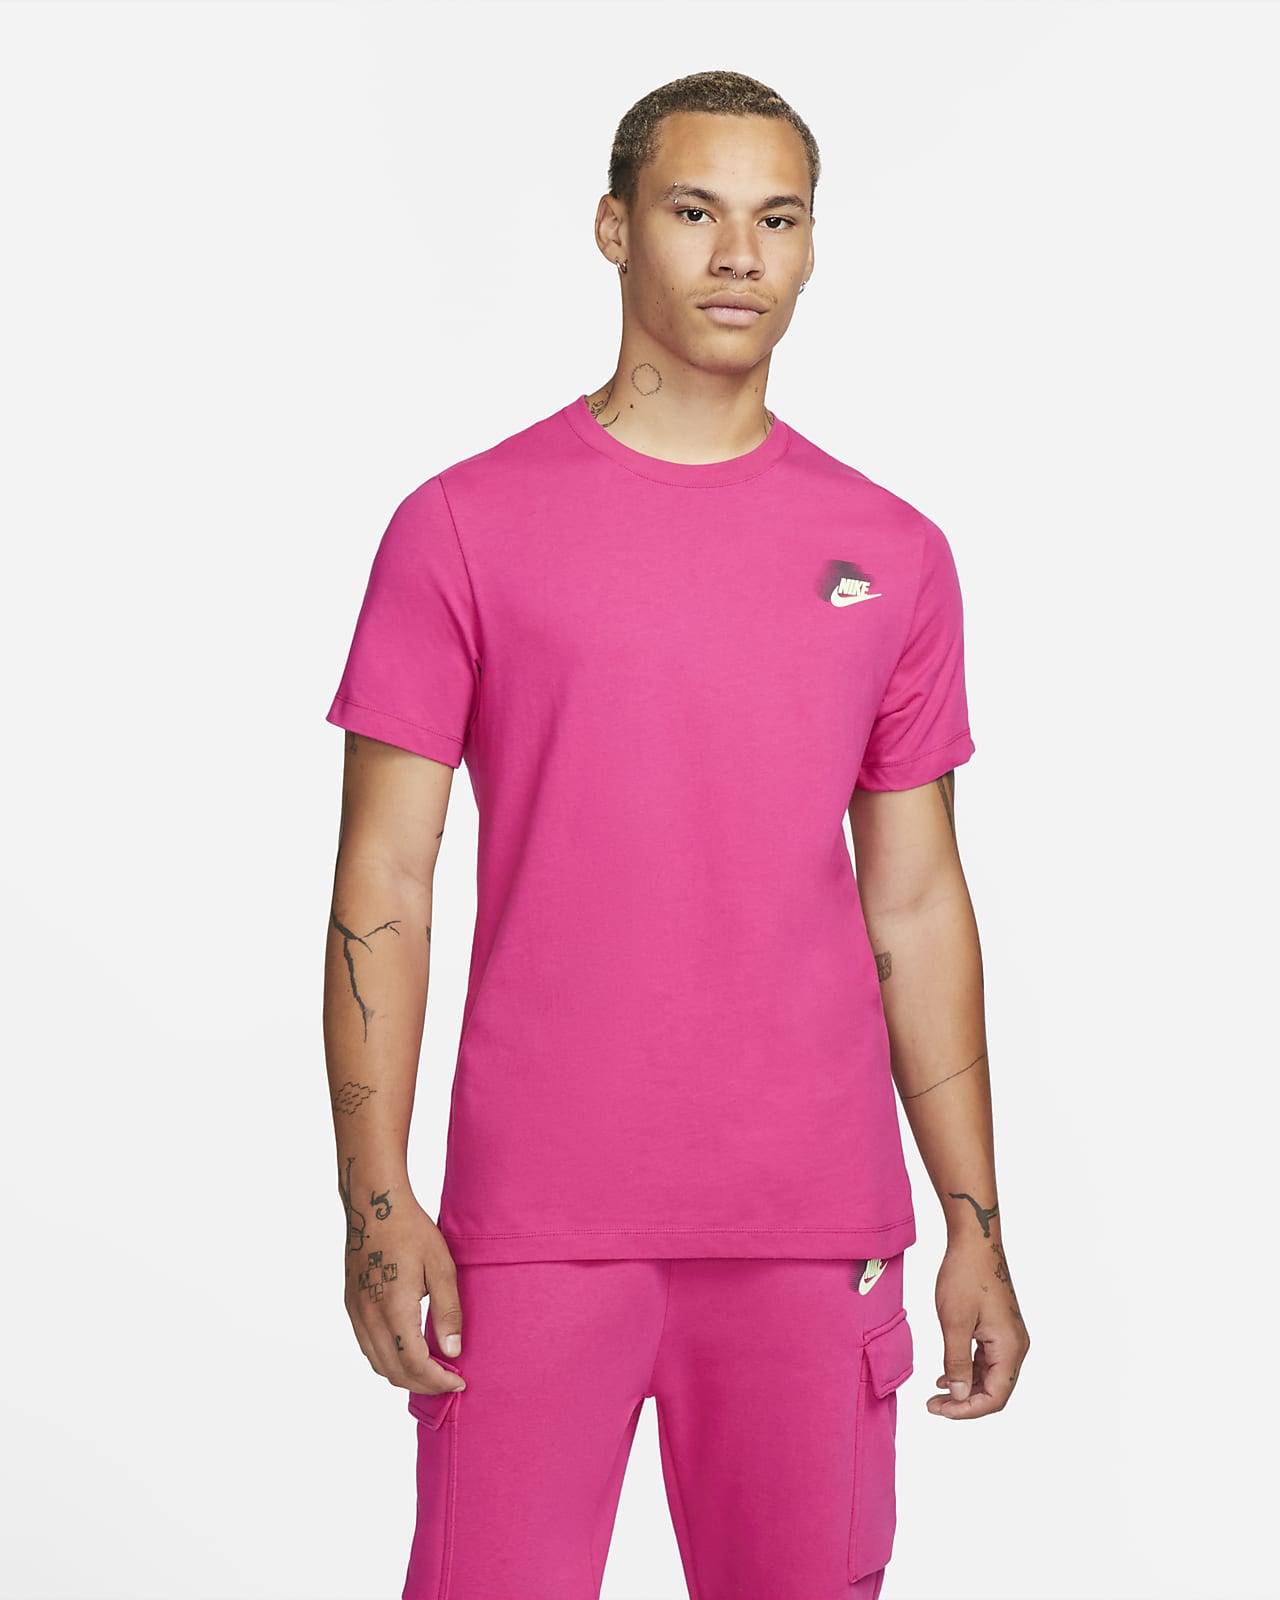 Nike Sportswear Standard Issue Herren-T-Shirt